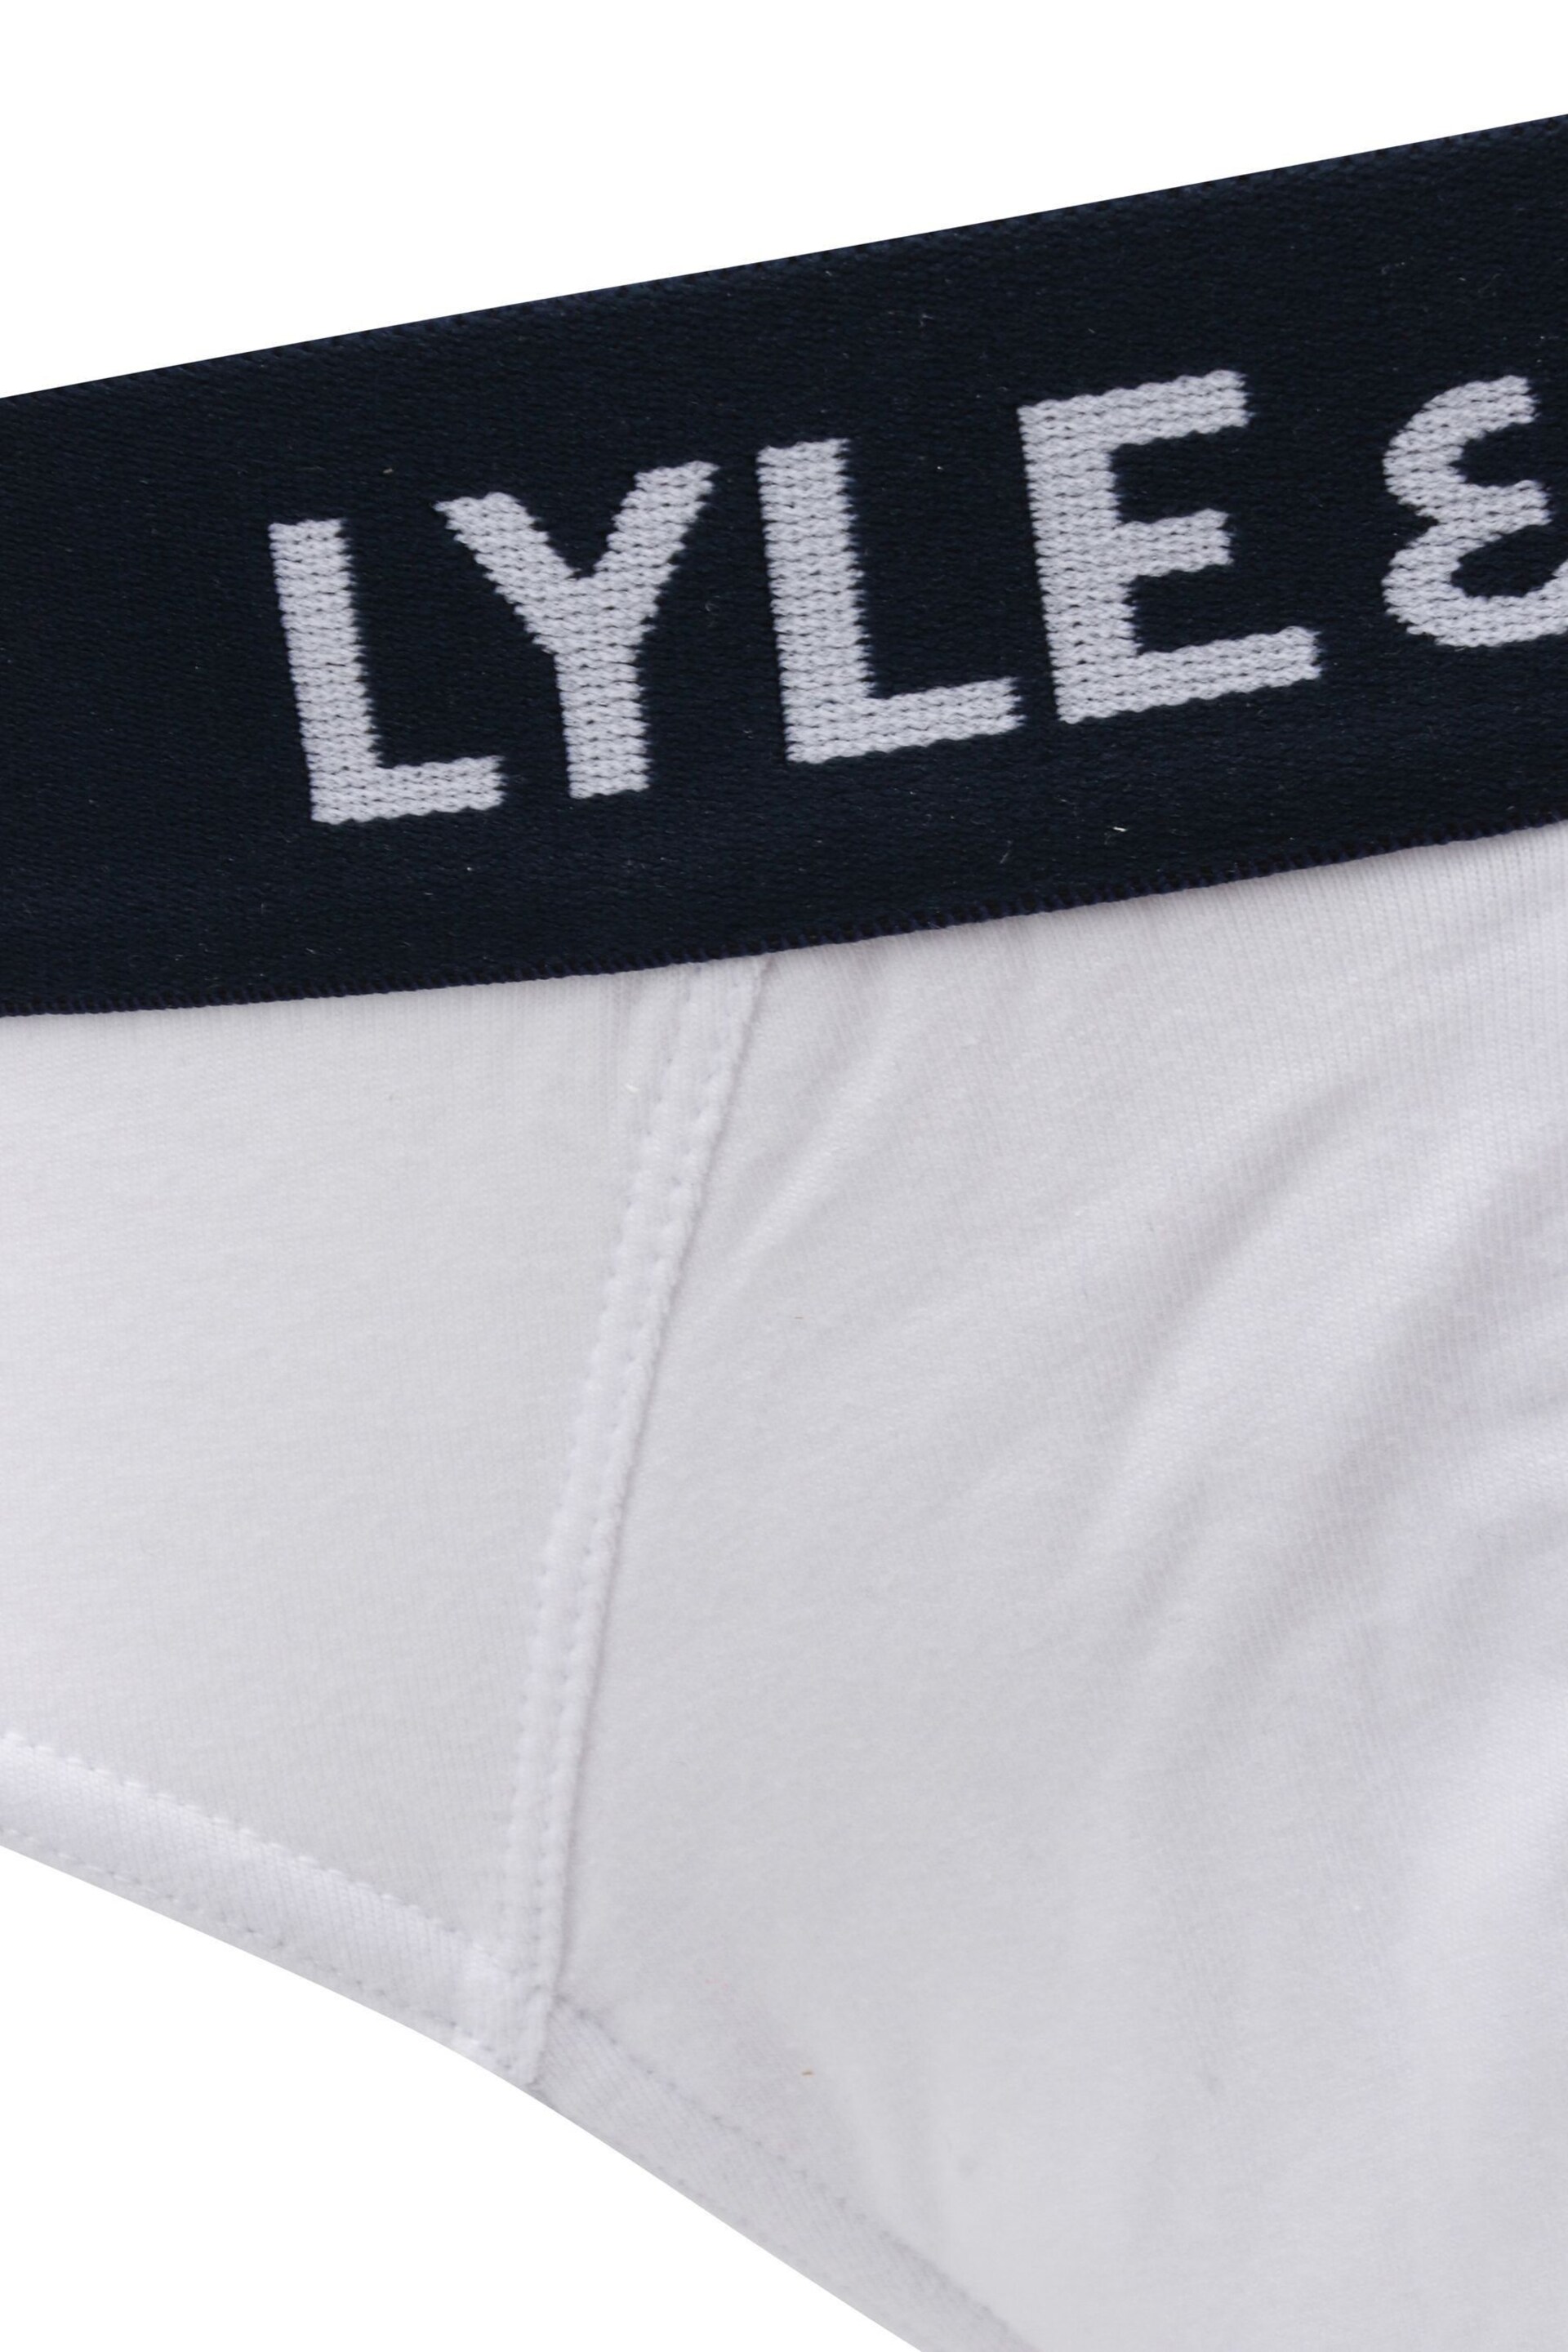 Lyle & Scott Underwear Briefs 3 Pack - Image 5 of 5